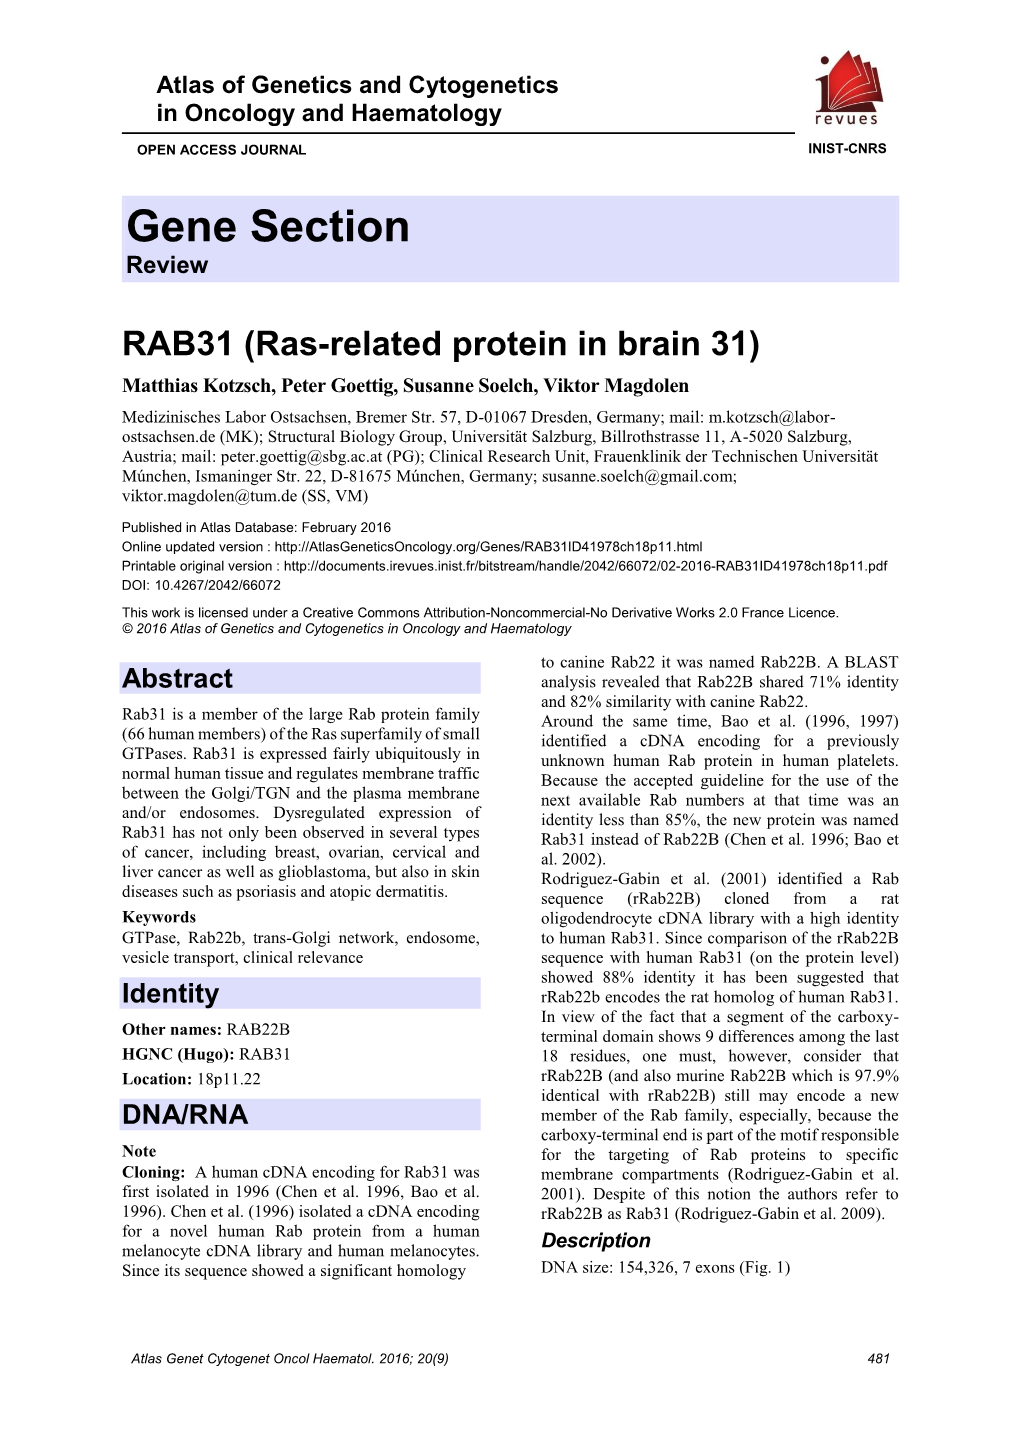 RAB31 (Ras-Related Protein in Brain 31) Matthias Kotzsch, Peter Goettig, Susanne Soelch, Viktor Magdolen Medizinisches Labor Ostsachsen, Bremer Str